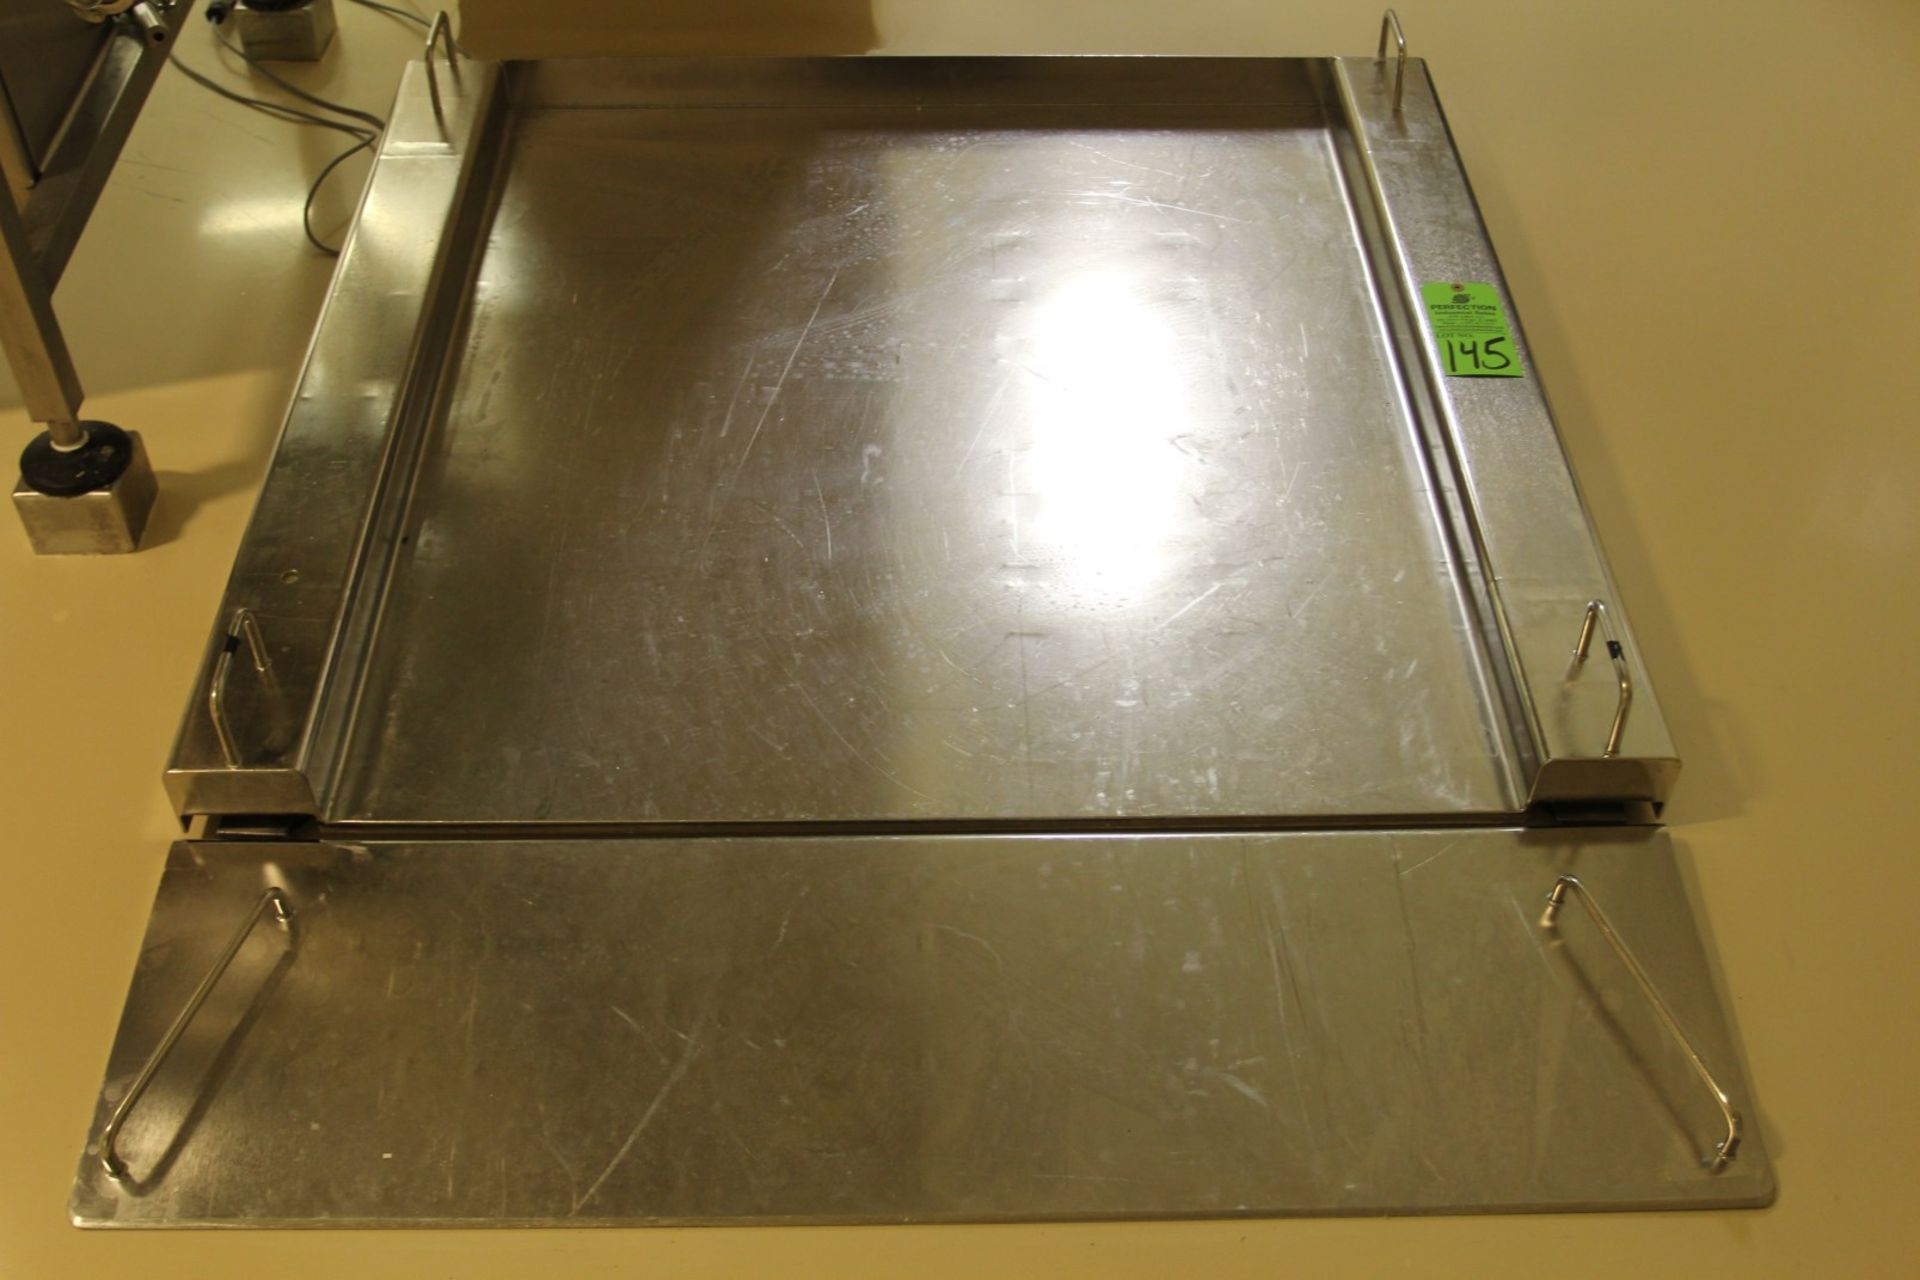 1500 kg Sartorius X6 Stainless Steel Floor Scale, s/n 17798322, 115cm x 100cm, Siebert Readout - Image 2 of 4